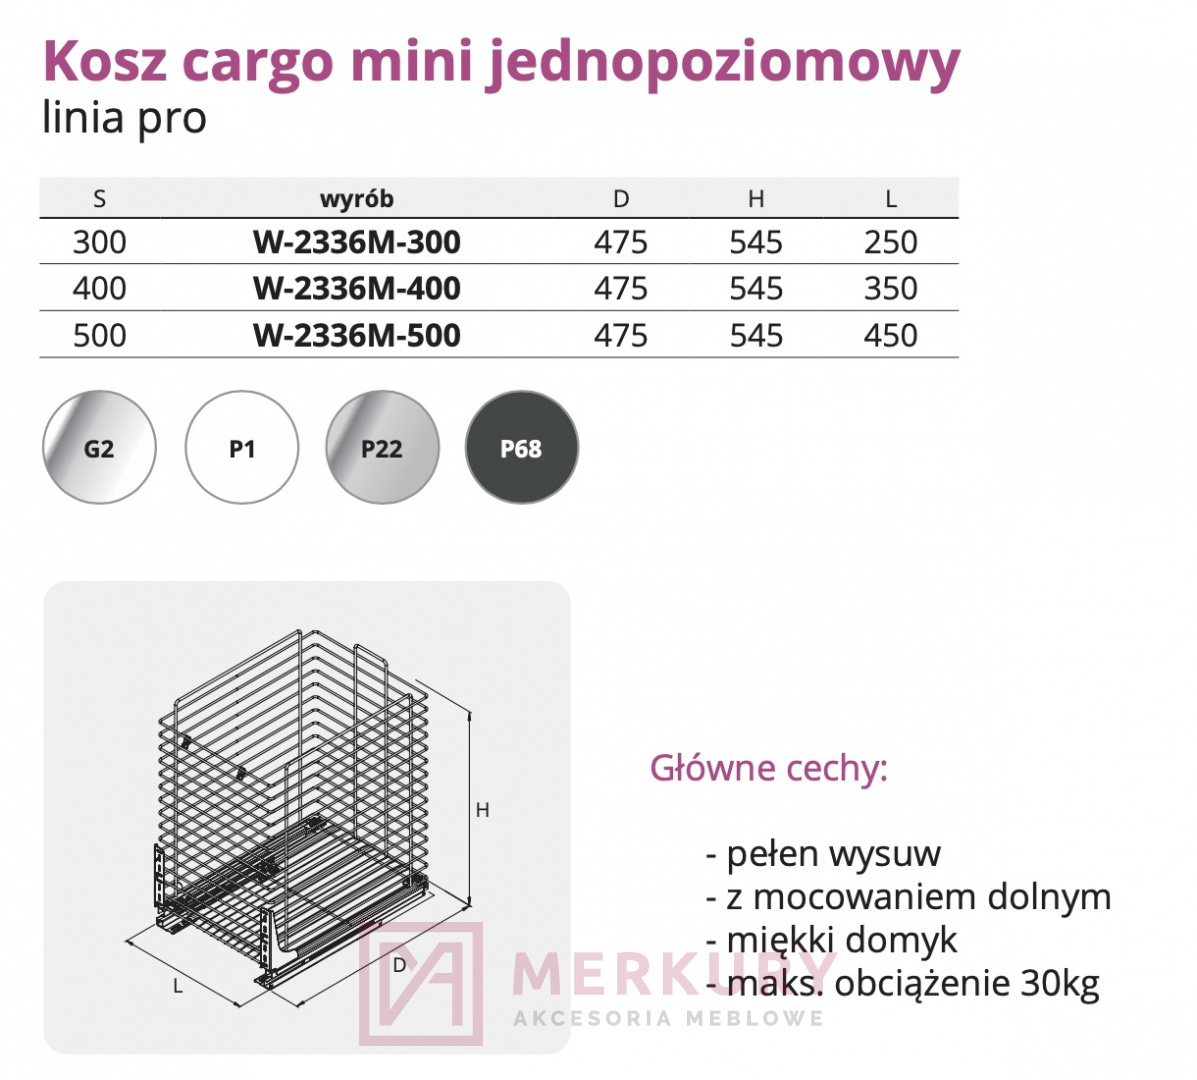 Kosz Cargo mini jednopoziomowy W-2336M, srebrny, 500mm, linia PRO SKLEP INTERNETOWY MERKURY AKCESORIA MEBLOWE MARIUSZ ADAMCZYK